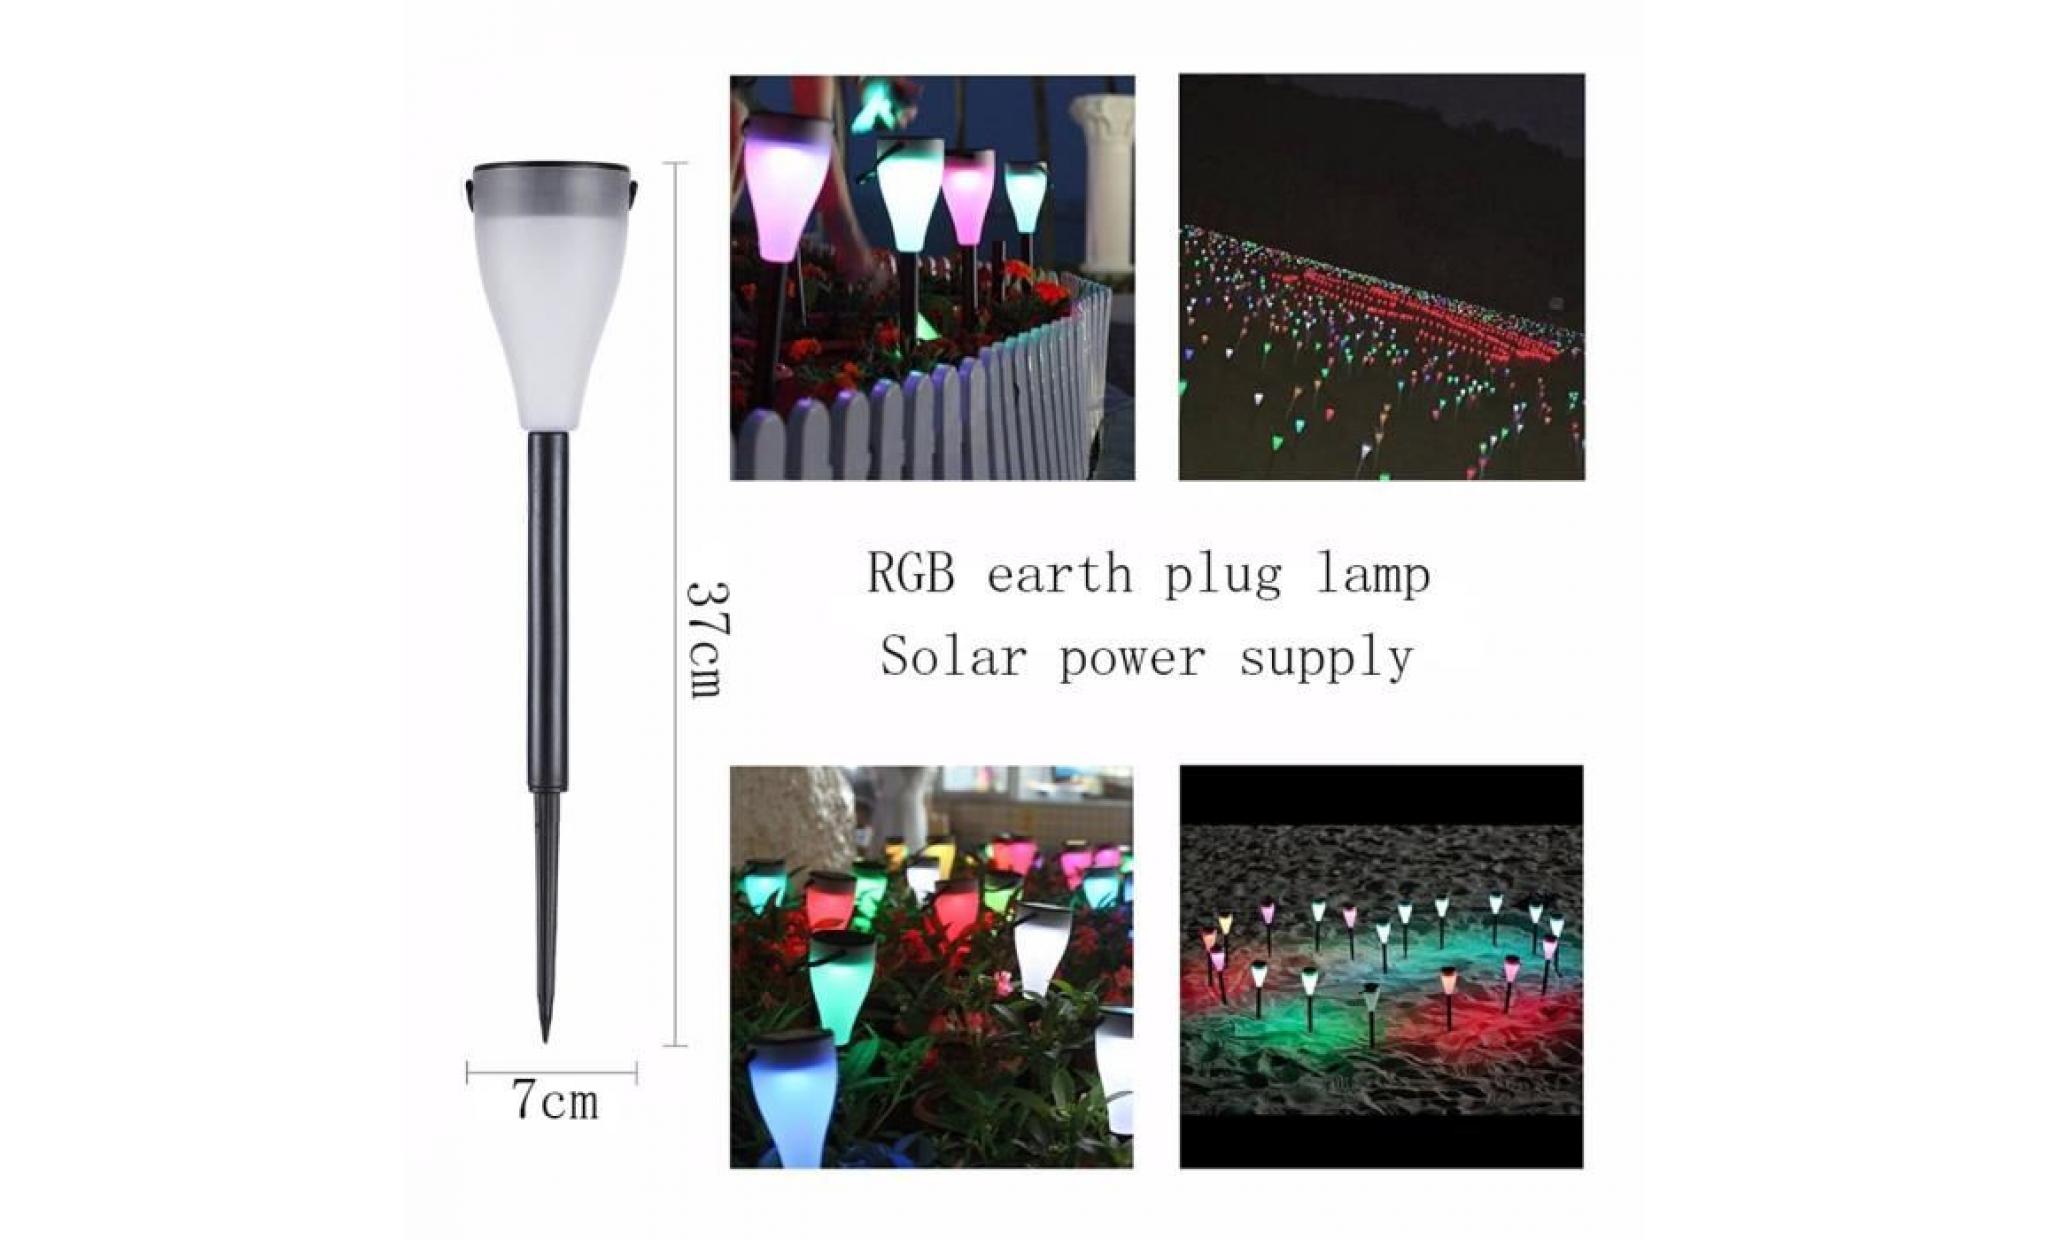 lampe standard   lampe de jardin jrled 0.5w imperméable à l'eau rgb + lumière blanche lumière solaire torch lampe à gazon